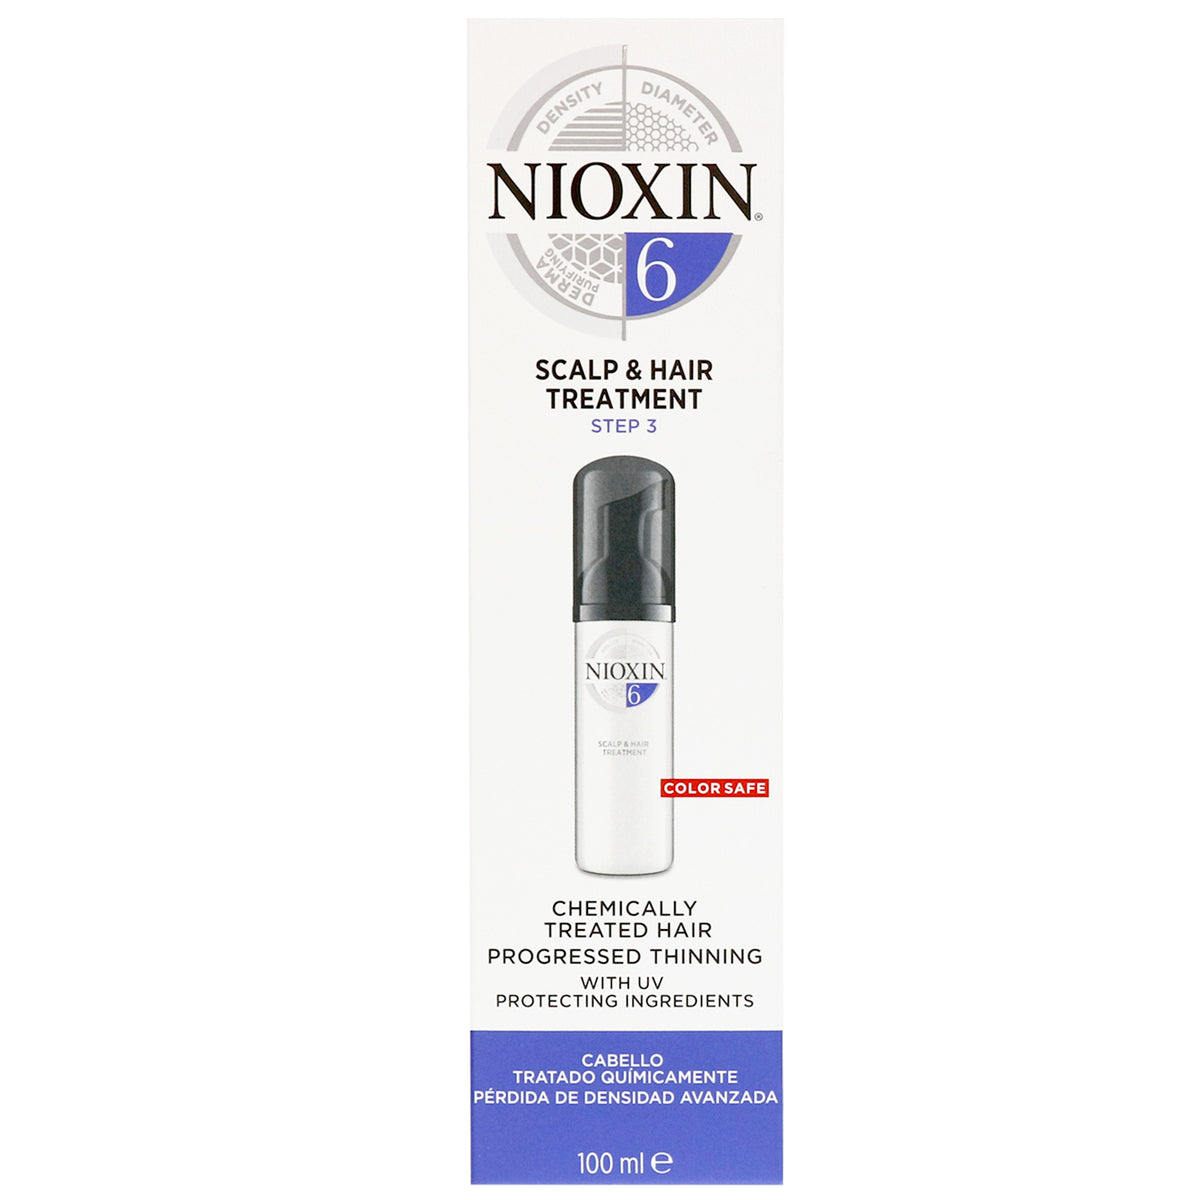 Nioxin Scalp and Hair Treatment 6, Step 3 - 100ml